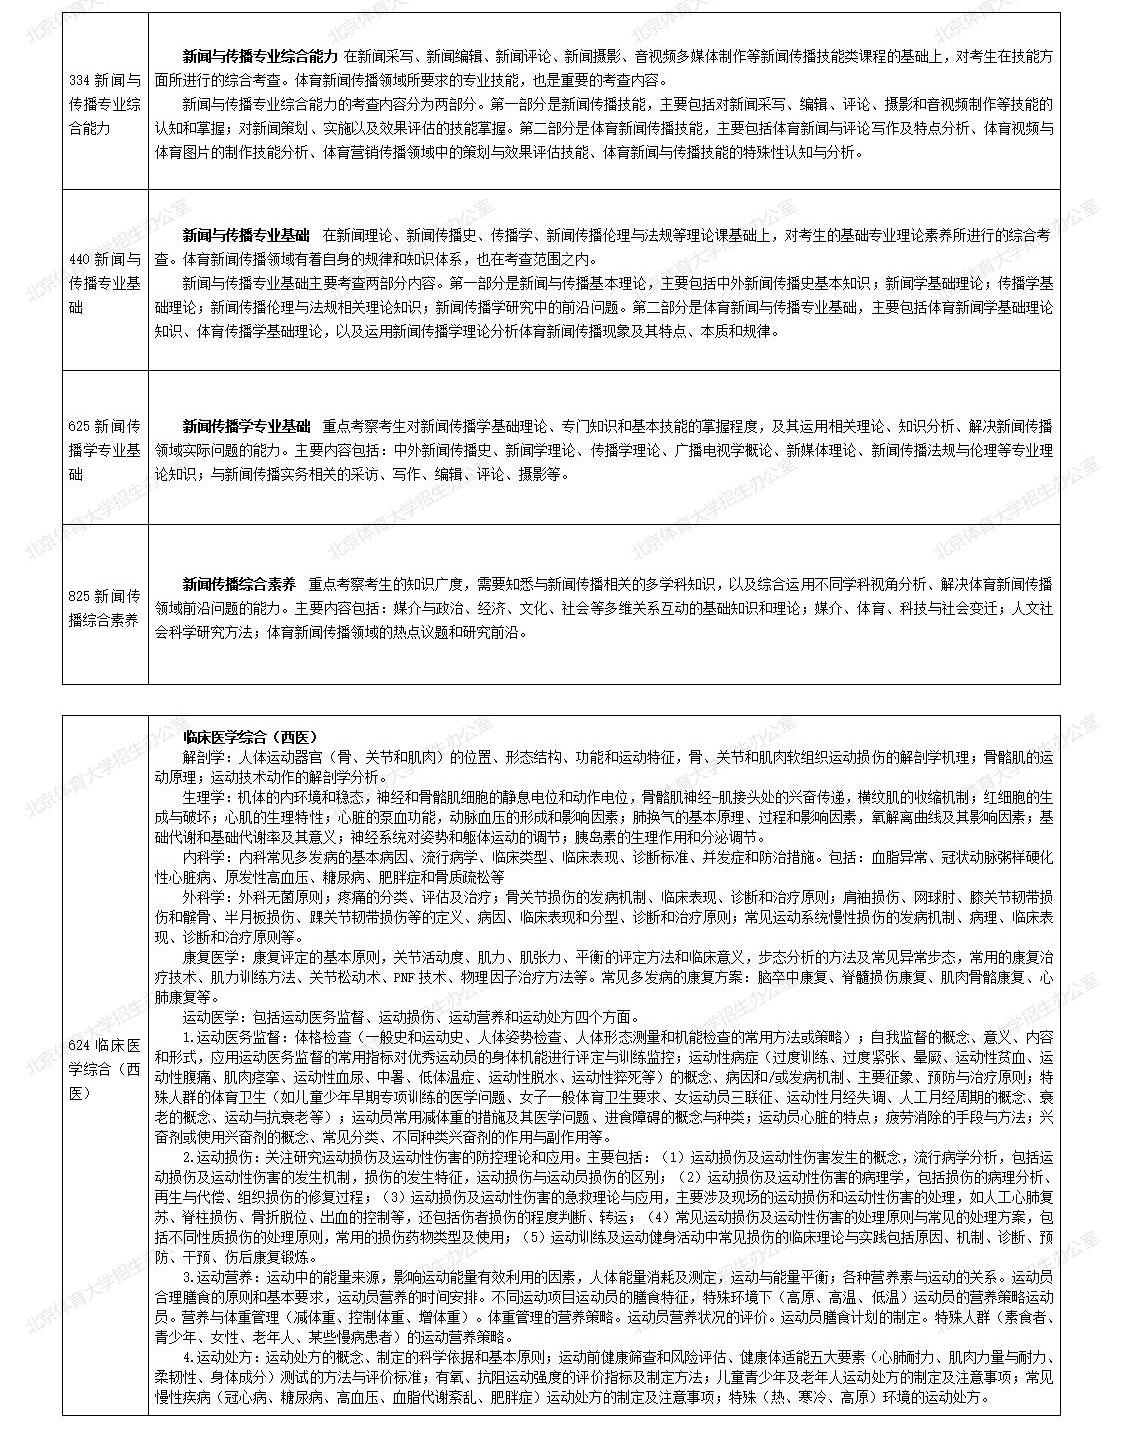 2024年北京体育大学舞蹈硕士研究生自命题科目考试内容说明及题型设置